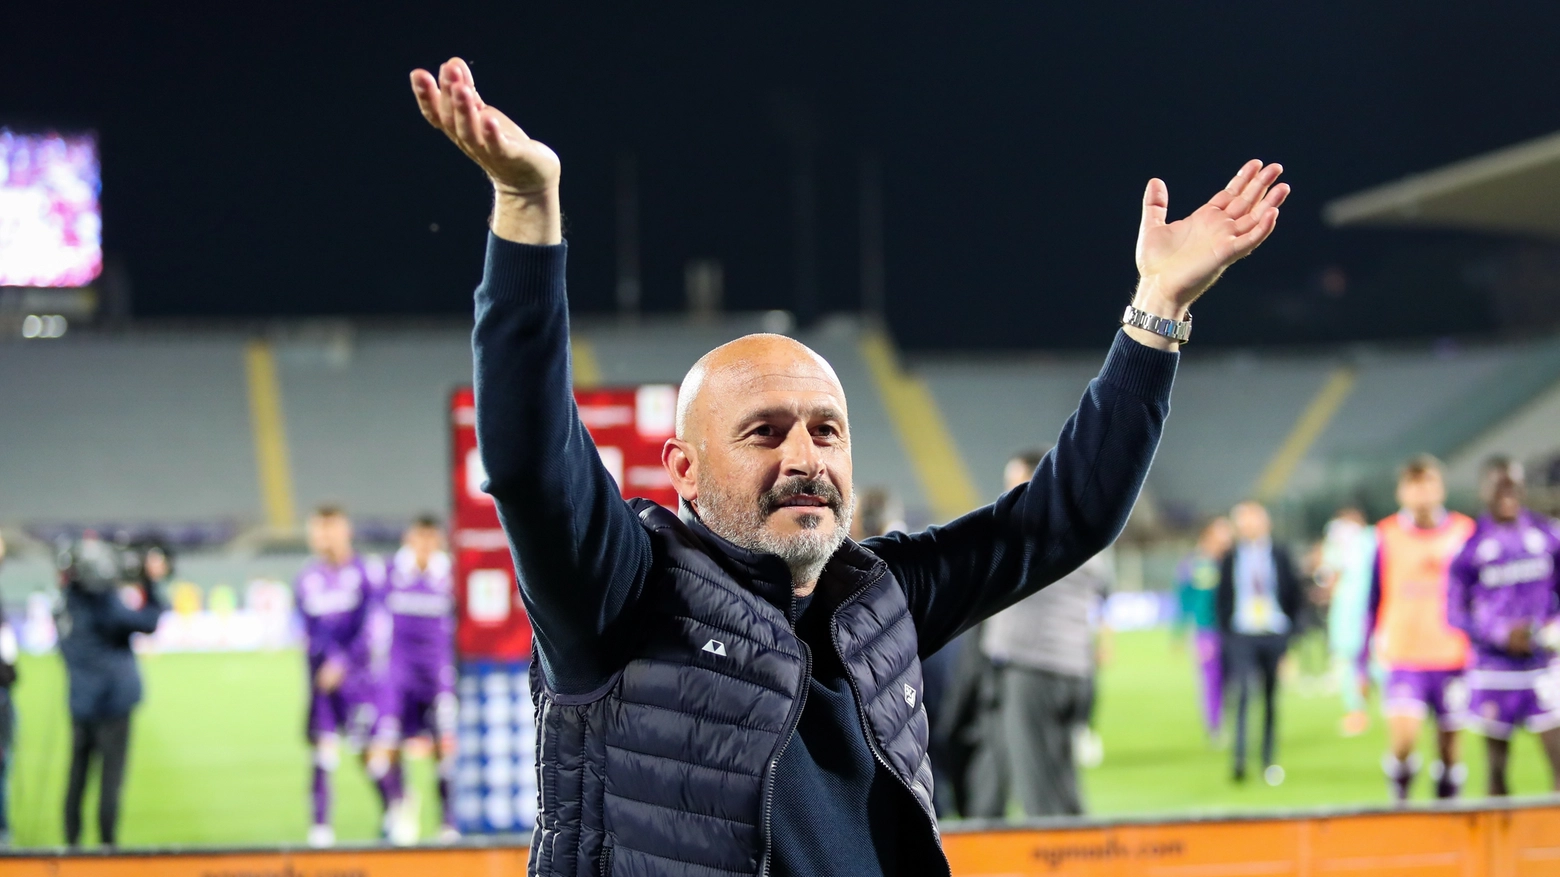 Il tecnico della Fiorentina è soddisfatto al termine della partita vinta contro il Monza per 2-1, che proietta la Fiorentina all'ottavo posto